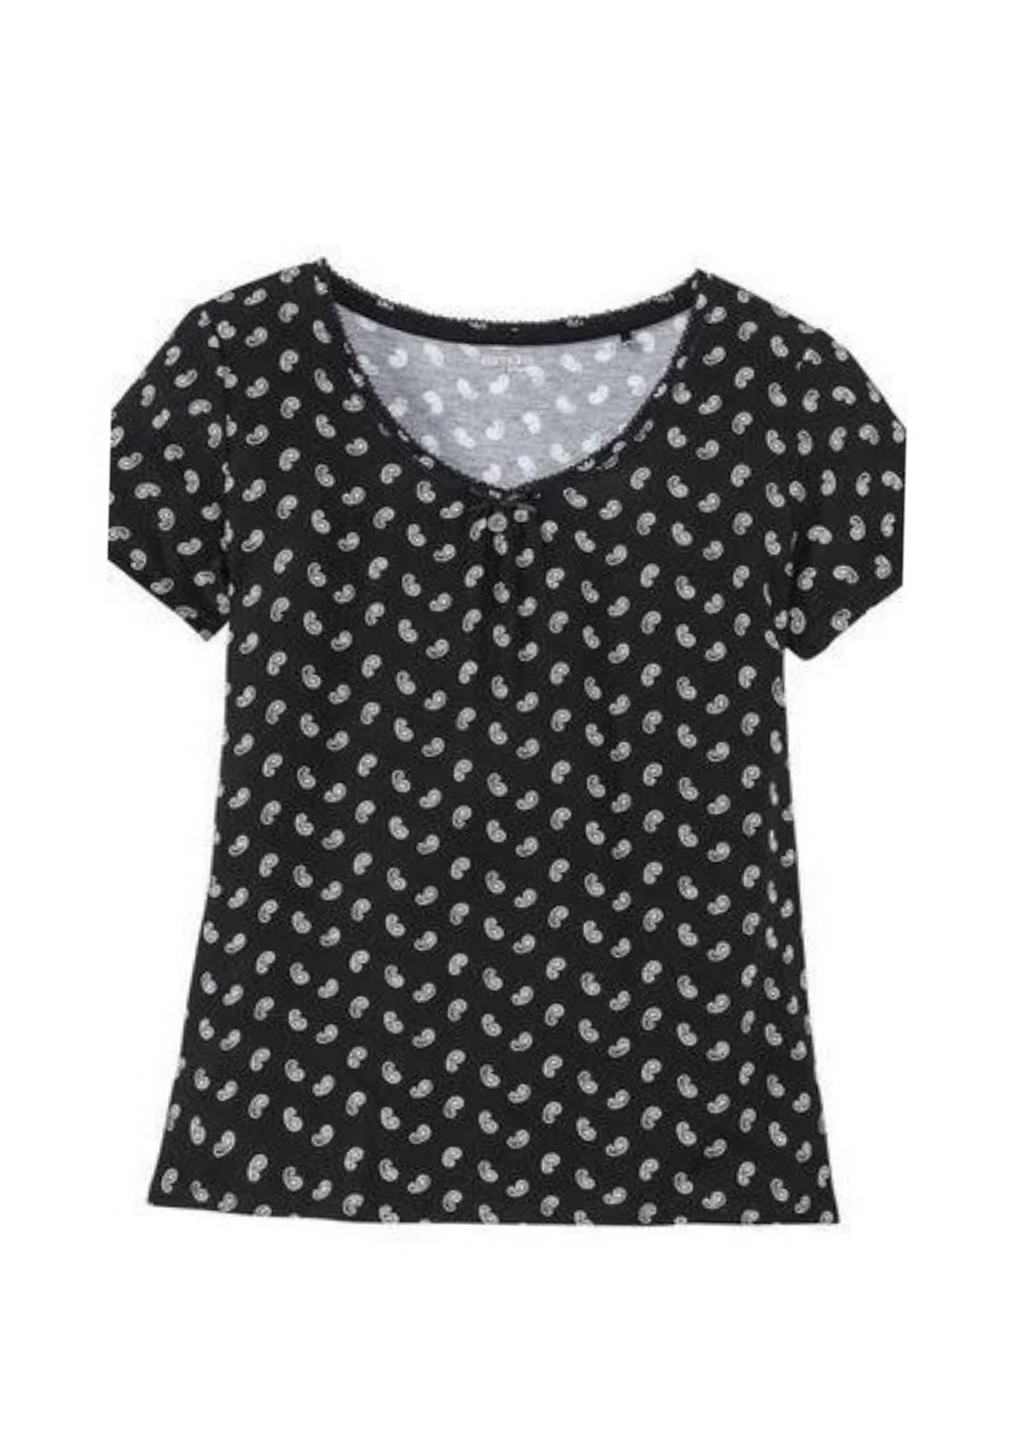 Черная всесезон пижама (футболка, капри) футболка + капри Esmara